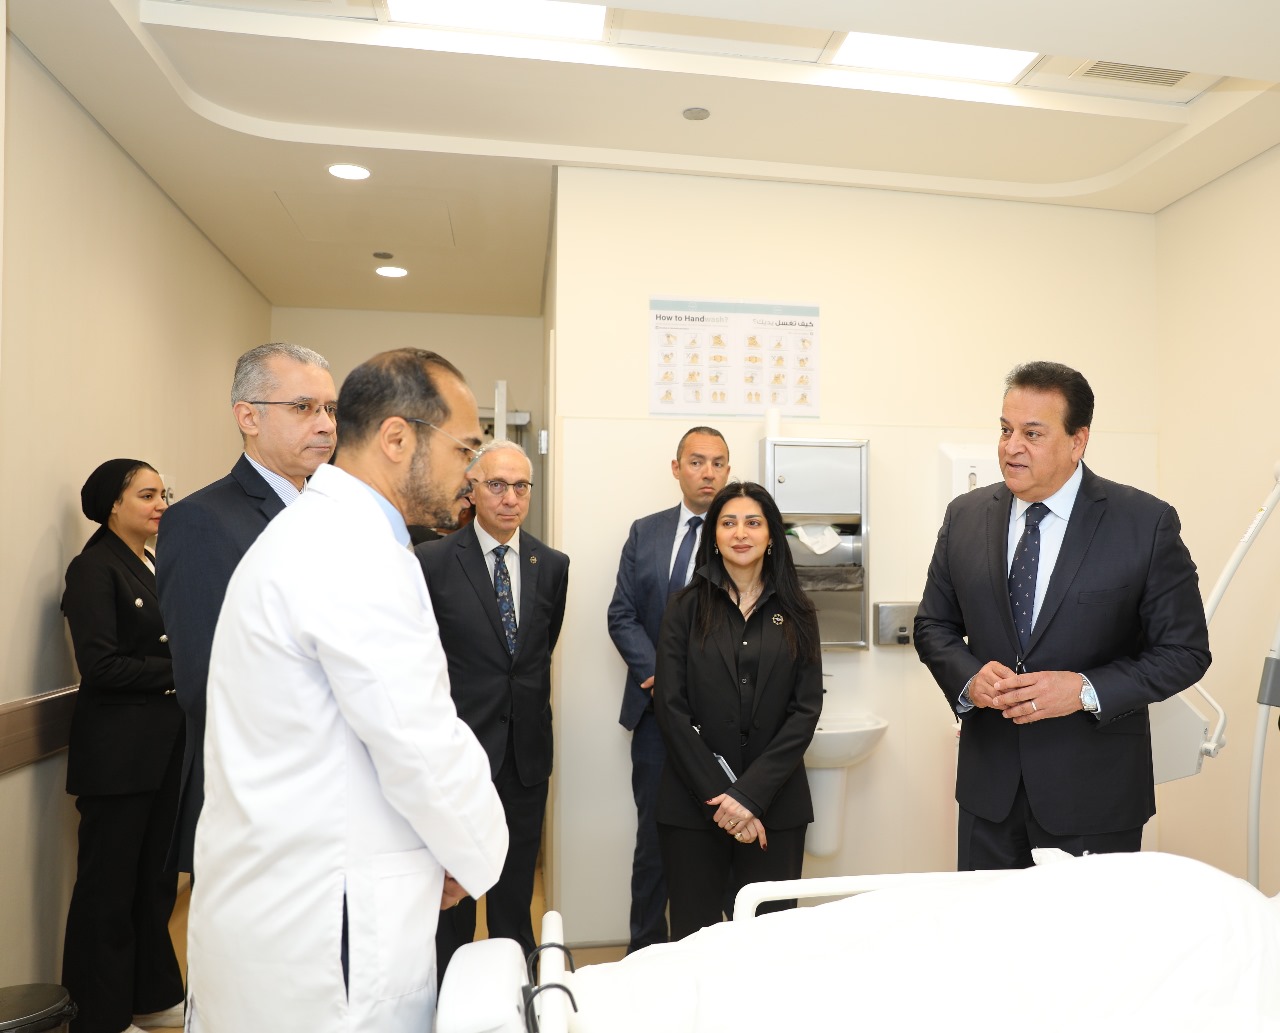 وزير الصحة: مستشفي أهل مصر صرح طبي متميز يُضاف للمنظومة الصحية في مصر